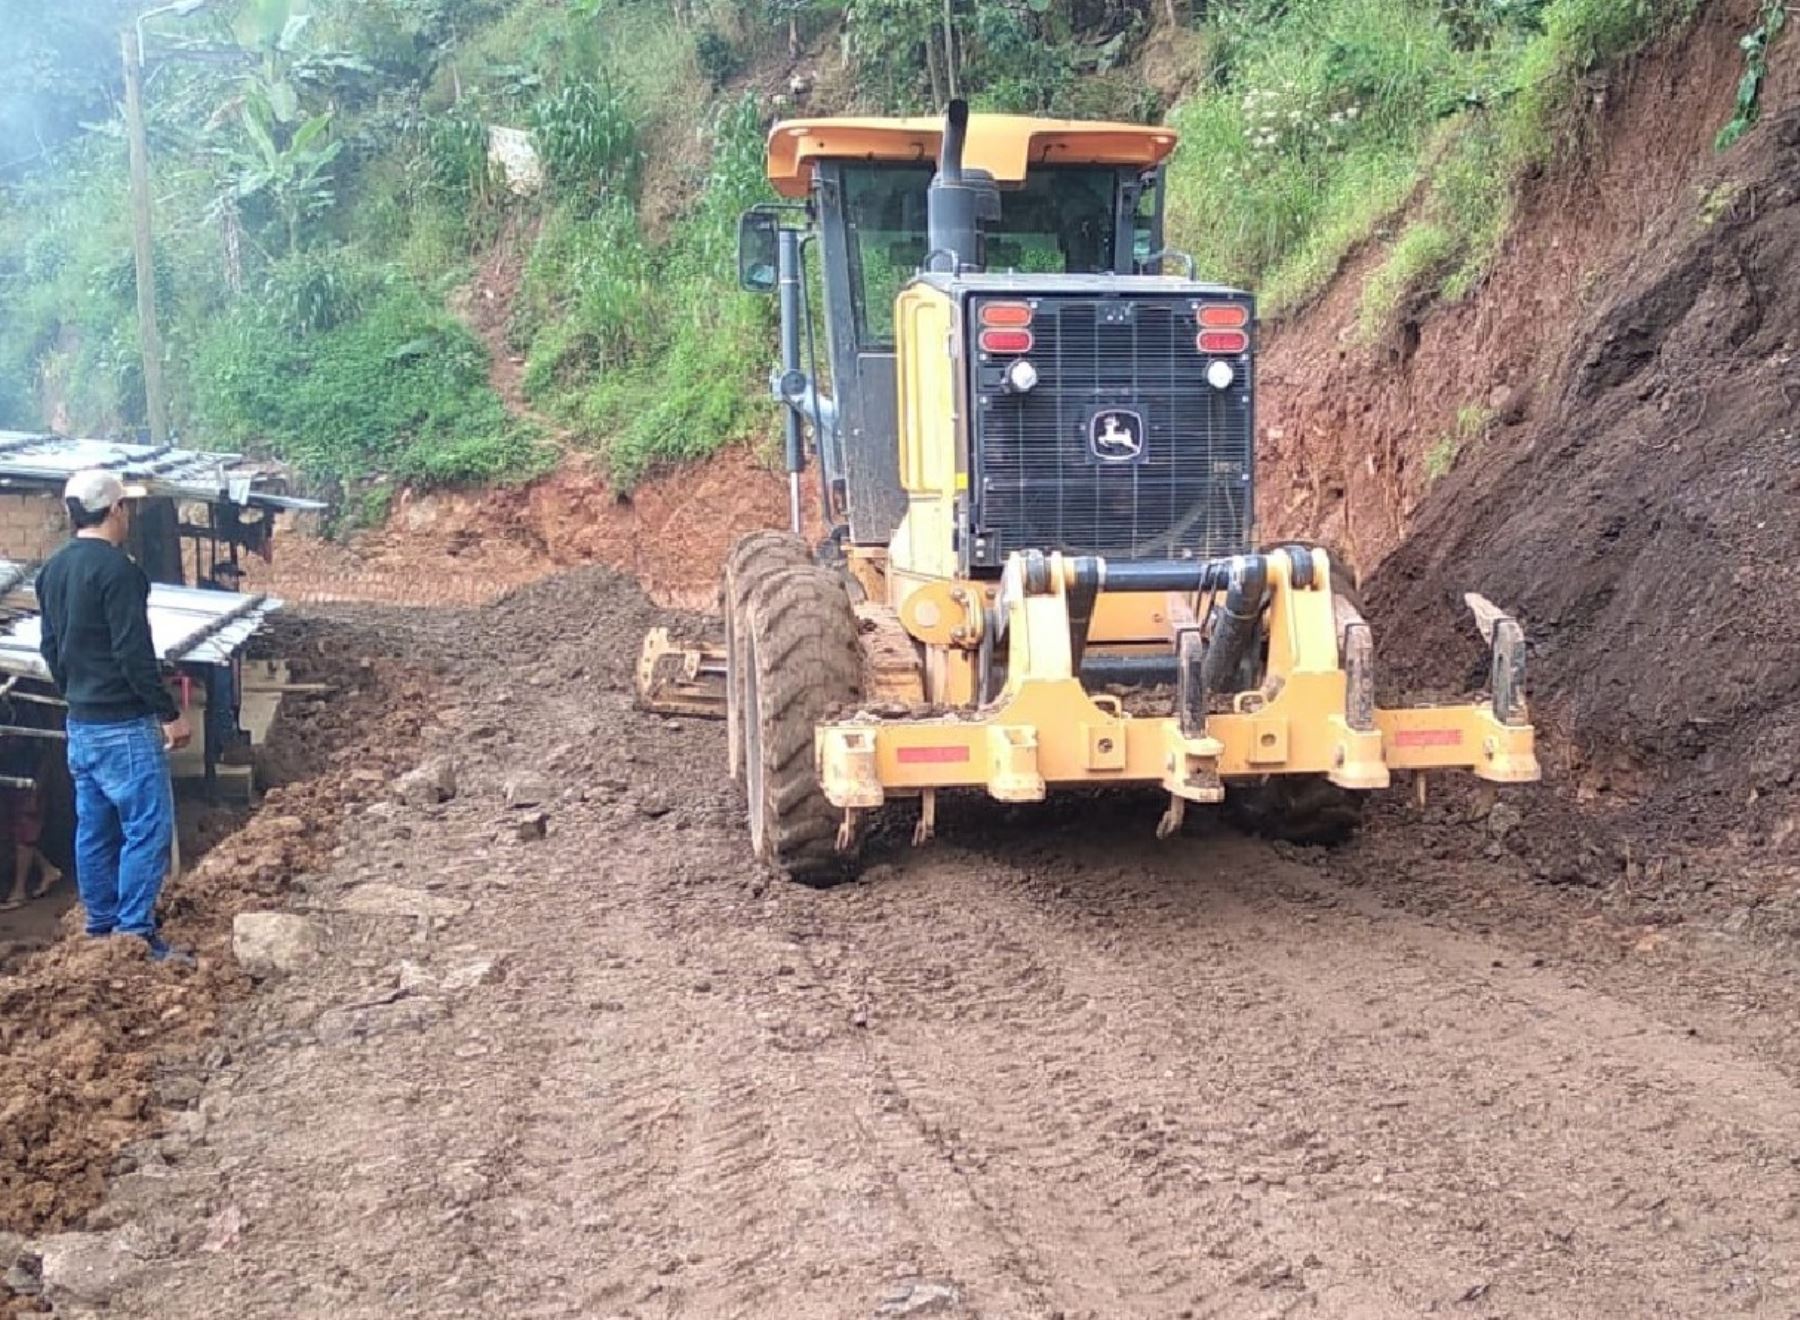 Con apoyo de maquinaria pesada continúan trabajos para mantener la transitabilidad en la vía alterna de la carretera Canchaque-Huancabamba, afectada en marzo por derrumbes causados por lluvias intensas. Foto: ANDINA/difusión.